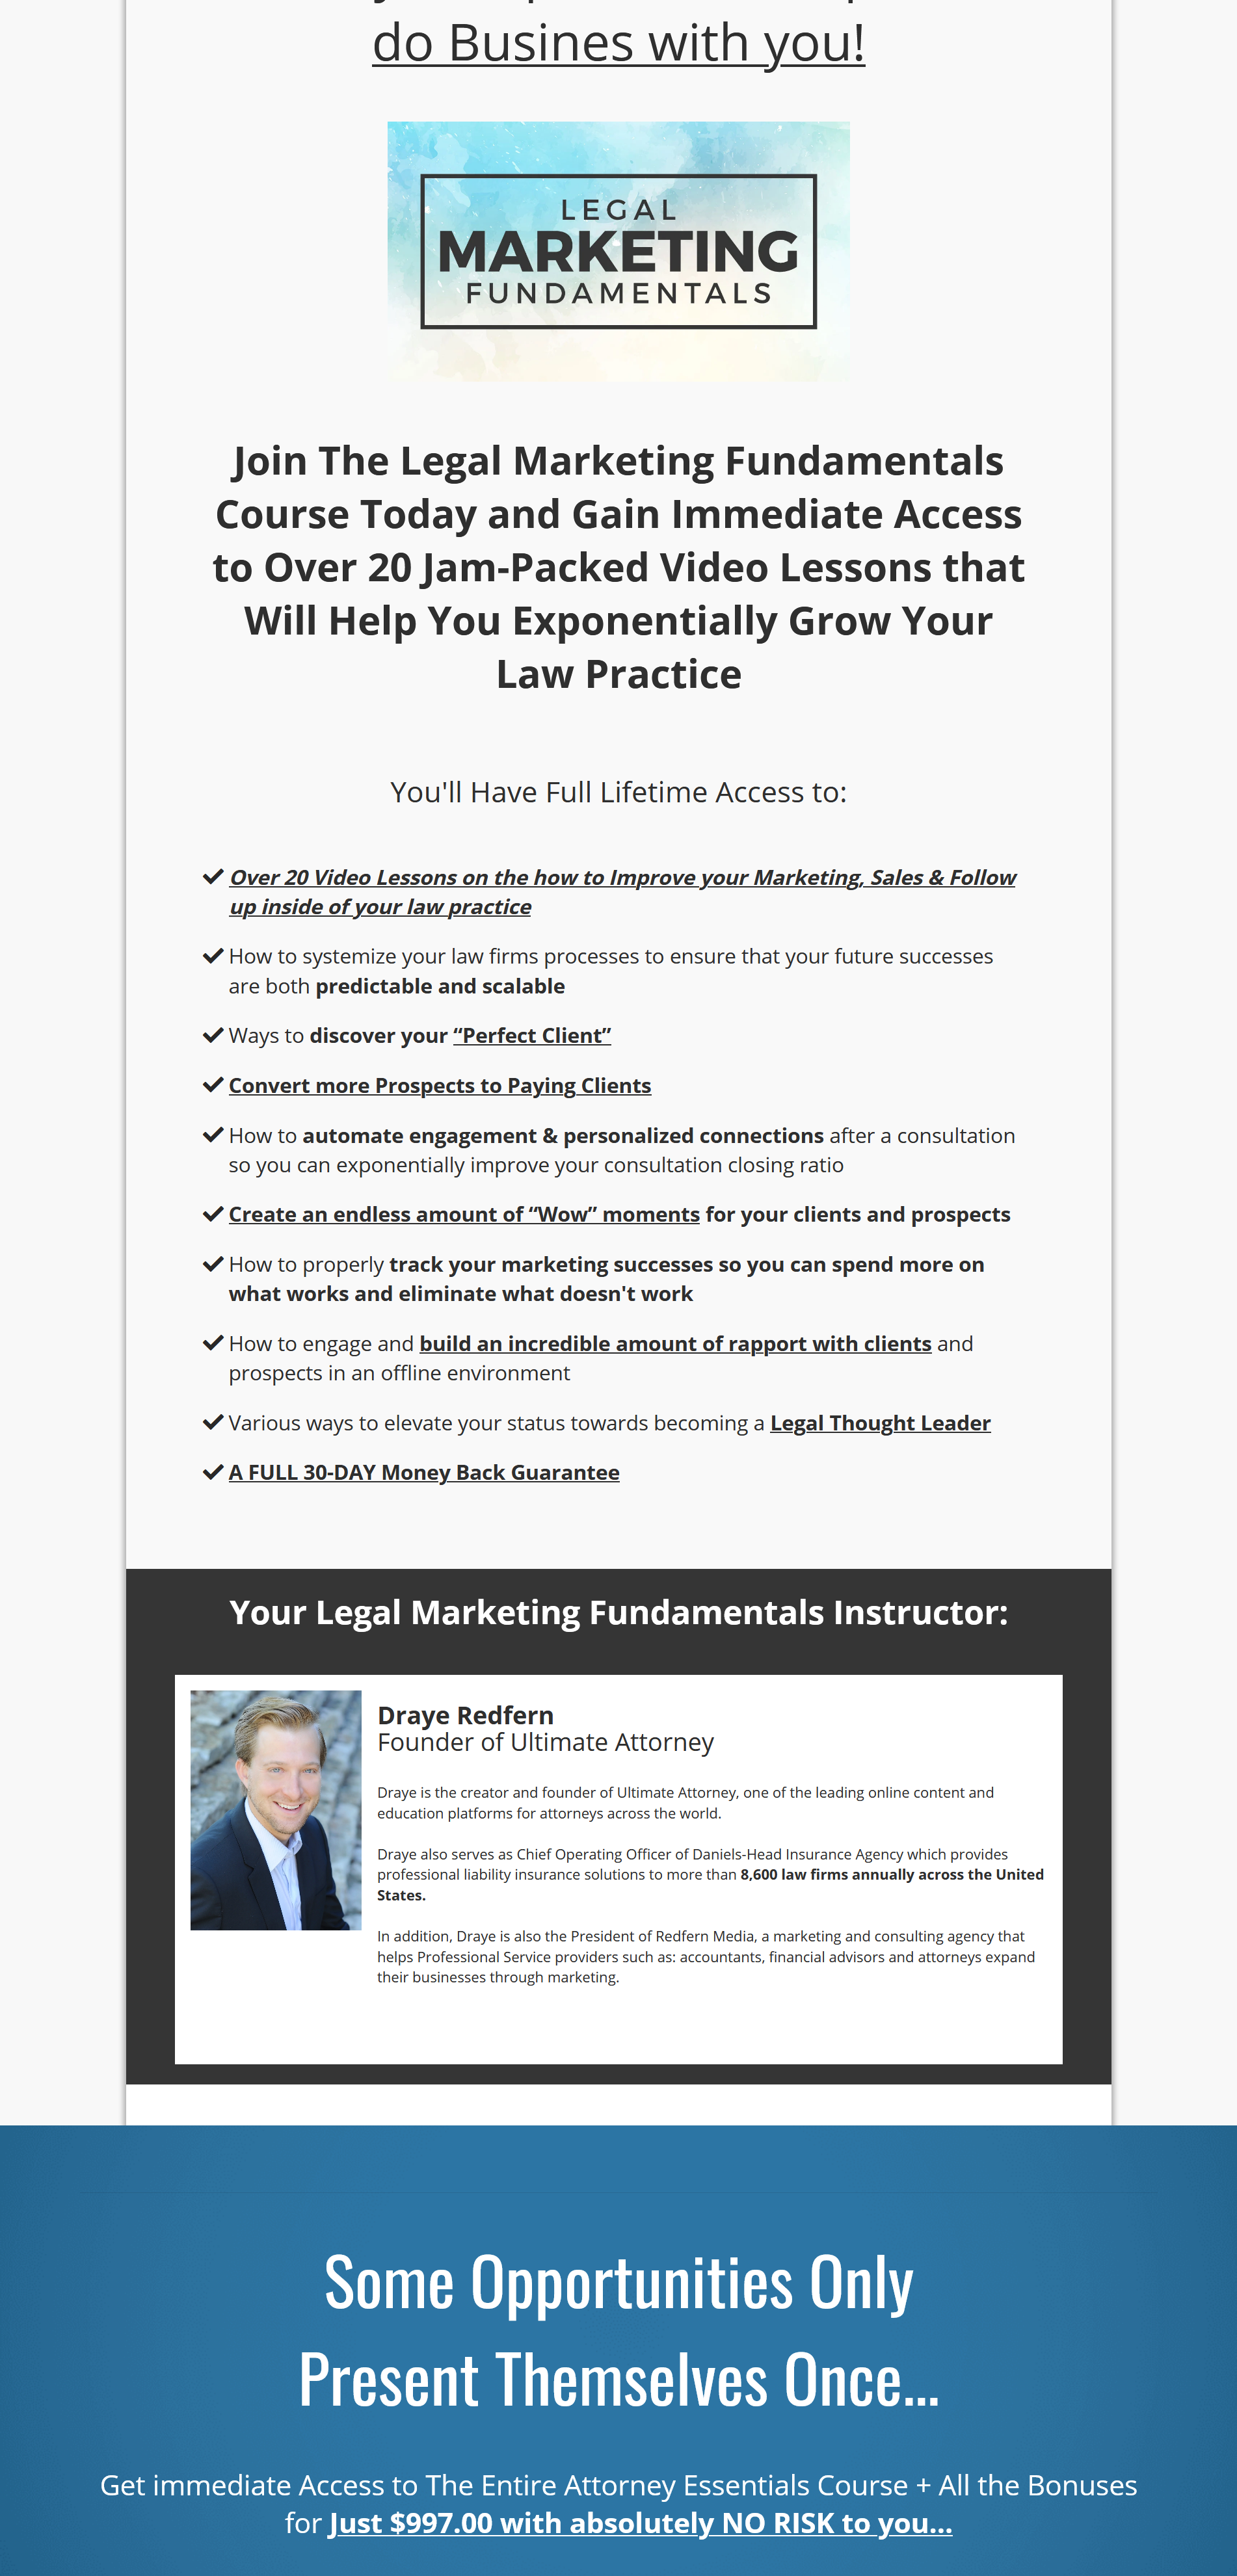 Legal Marketing Fundamentals by Draye Redfern 